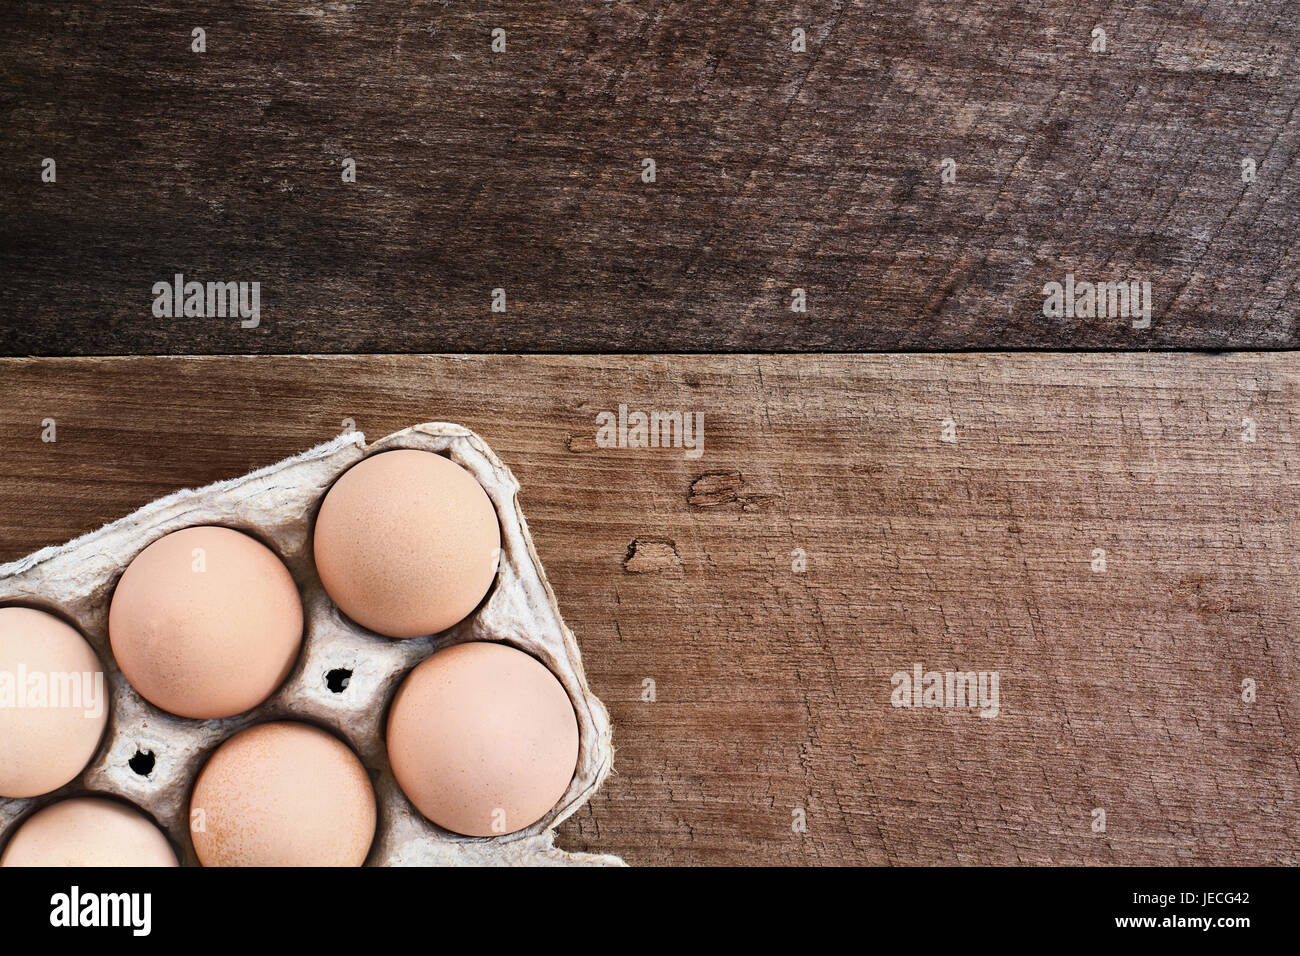 Orgánicos frescos de granja de huevos de pollo marrón Free Range pollos en un cartón de papel sobre un fondo de madera de estilo rústico. Foto de stock